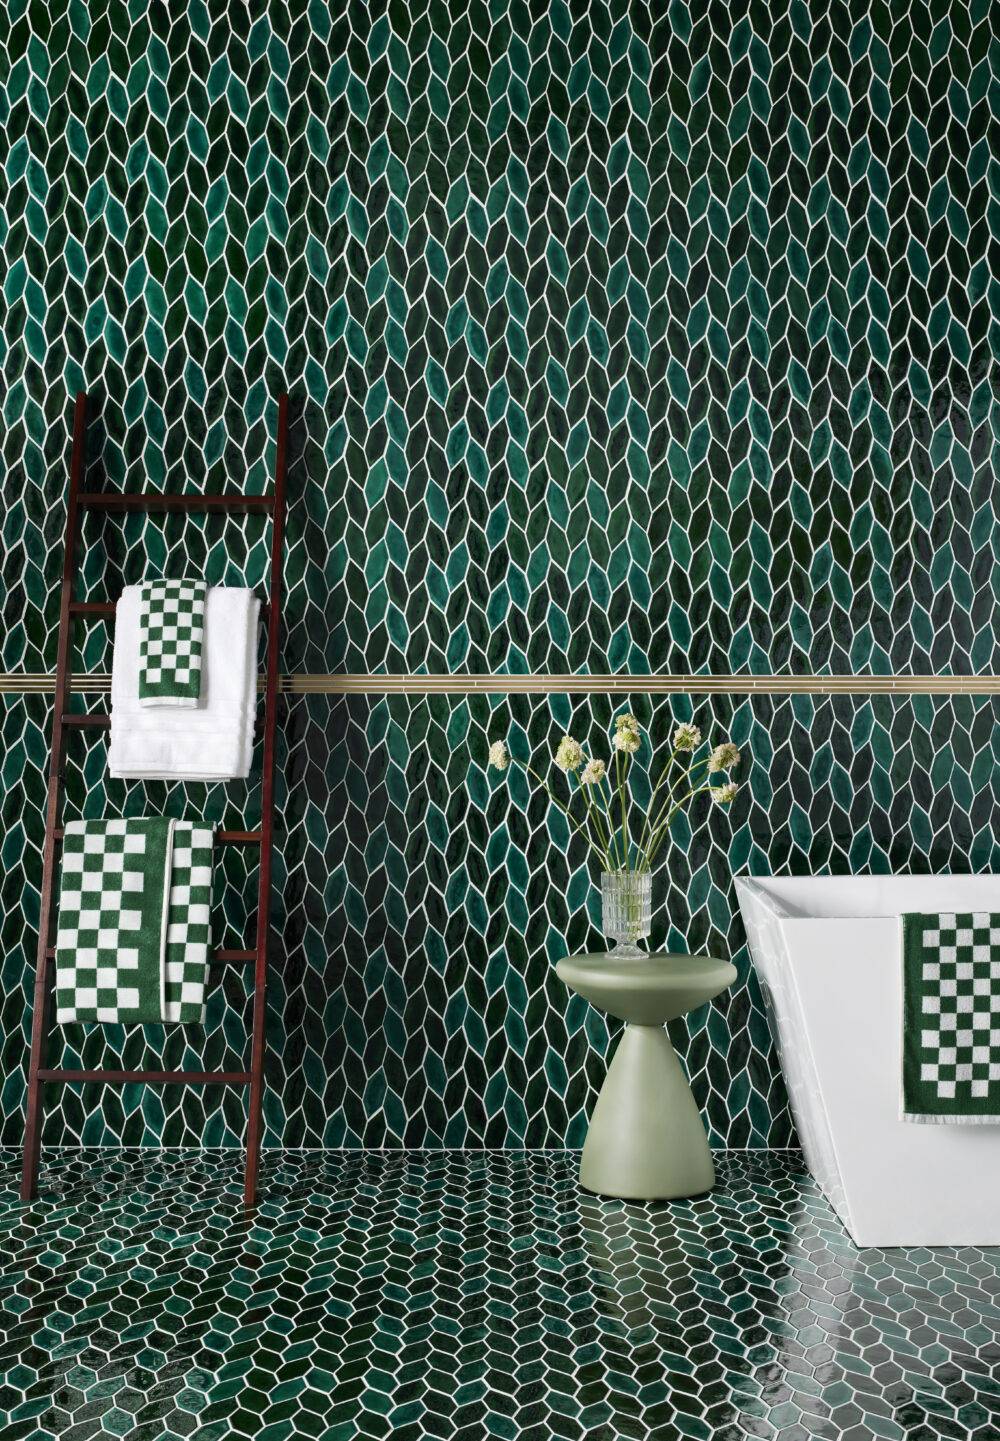 Green leaf mosaic bathroom wall with ladder towel rack. 